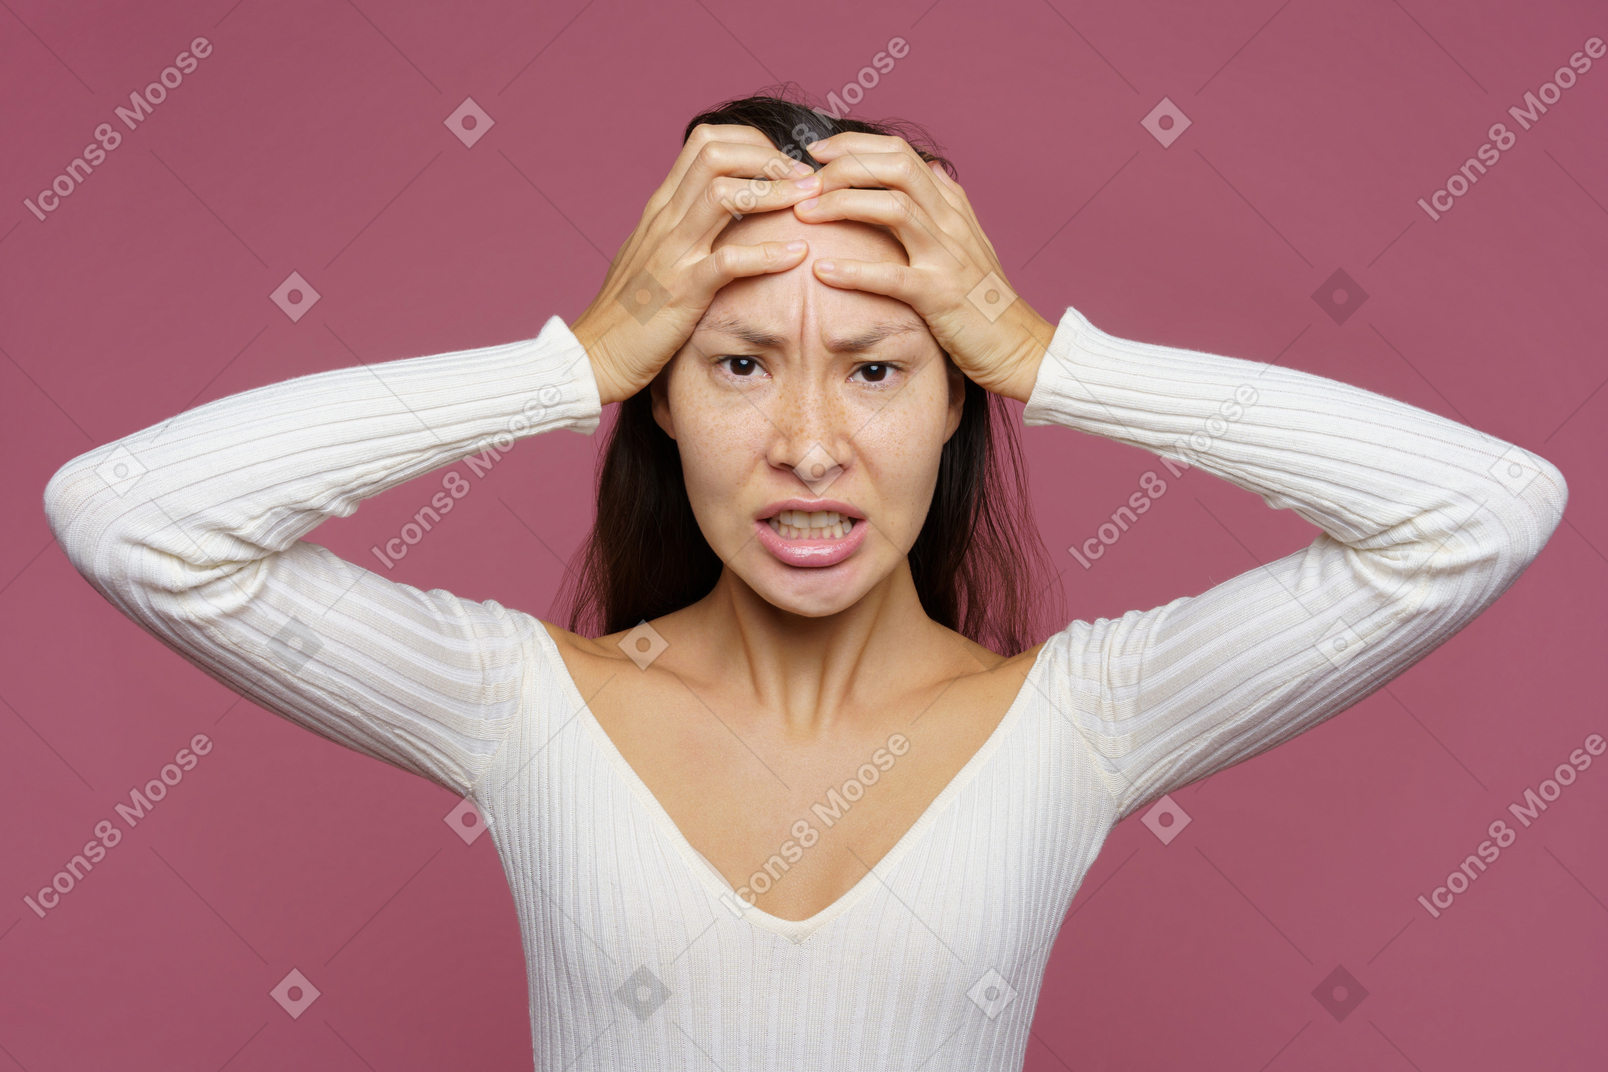 Vue de face d'une femme aux cheveux noirs en colère touchant la tête et regardant avec colère la caméra